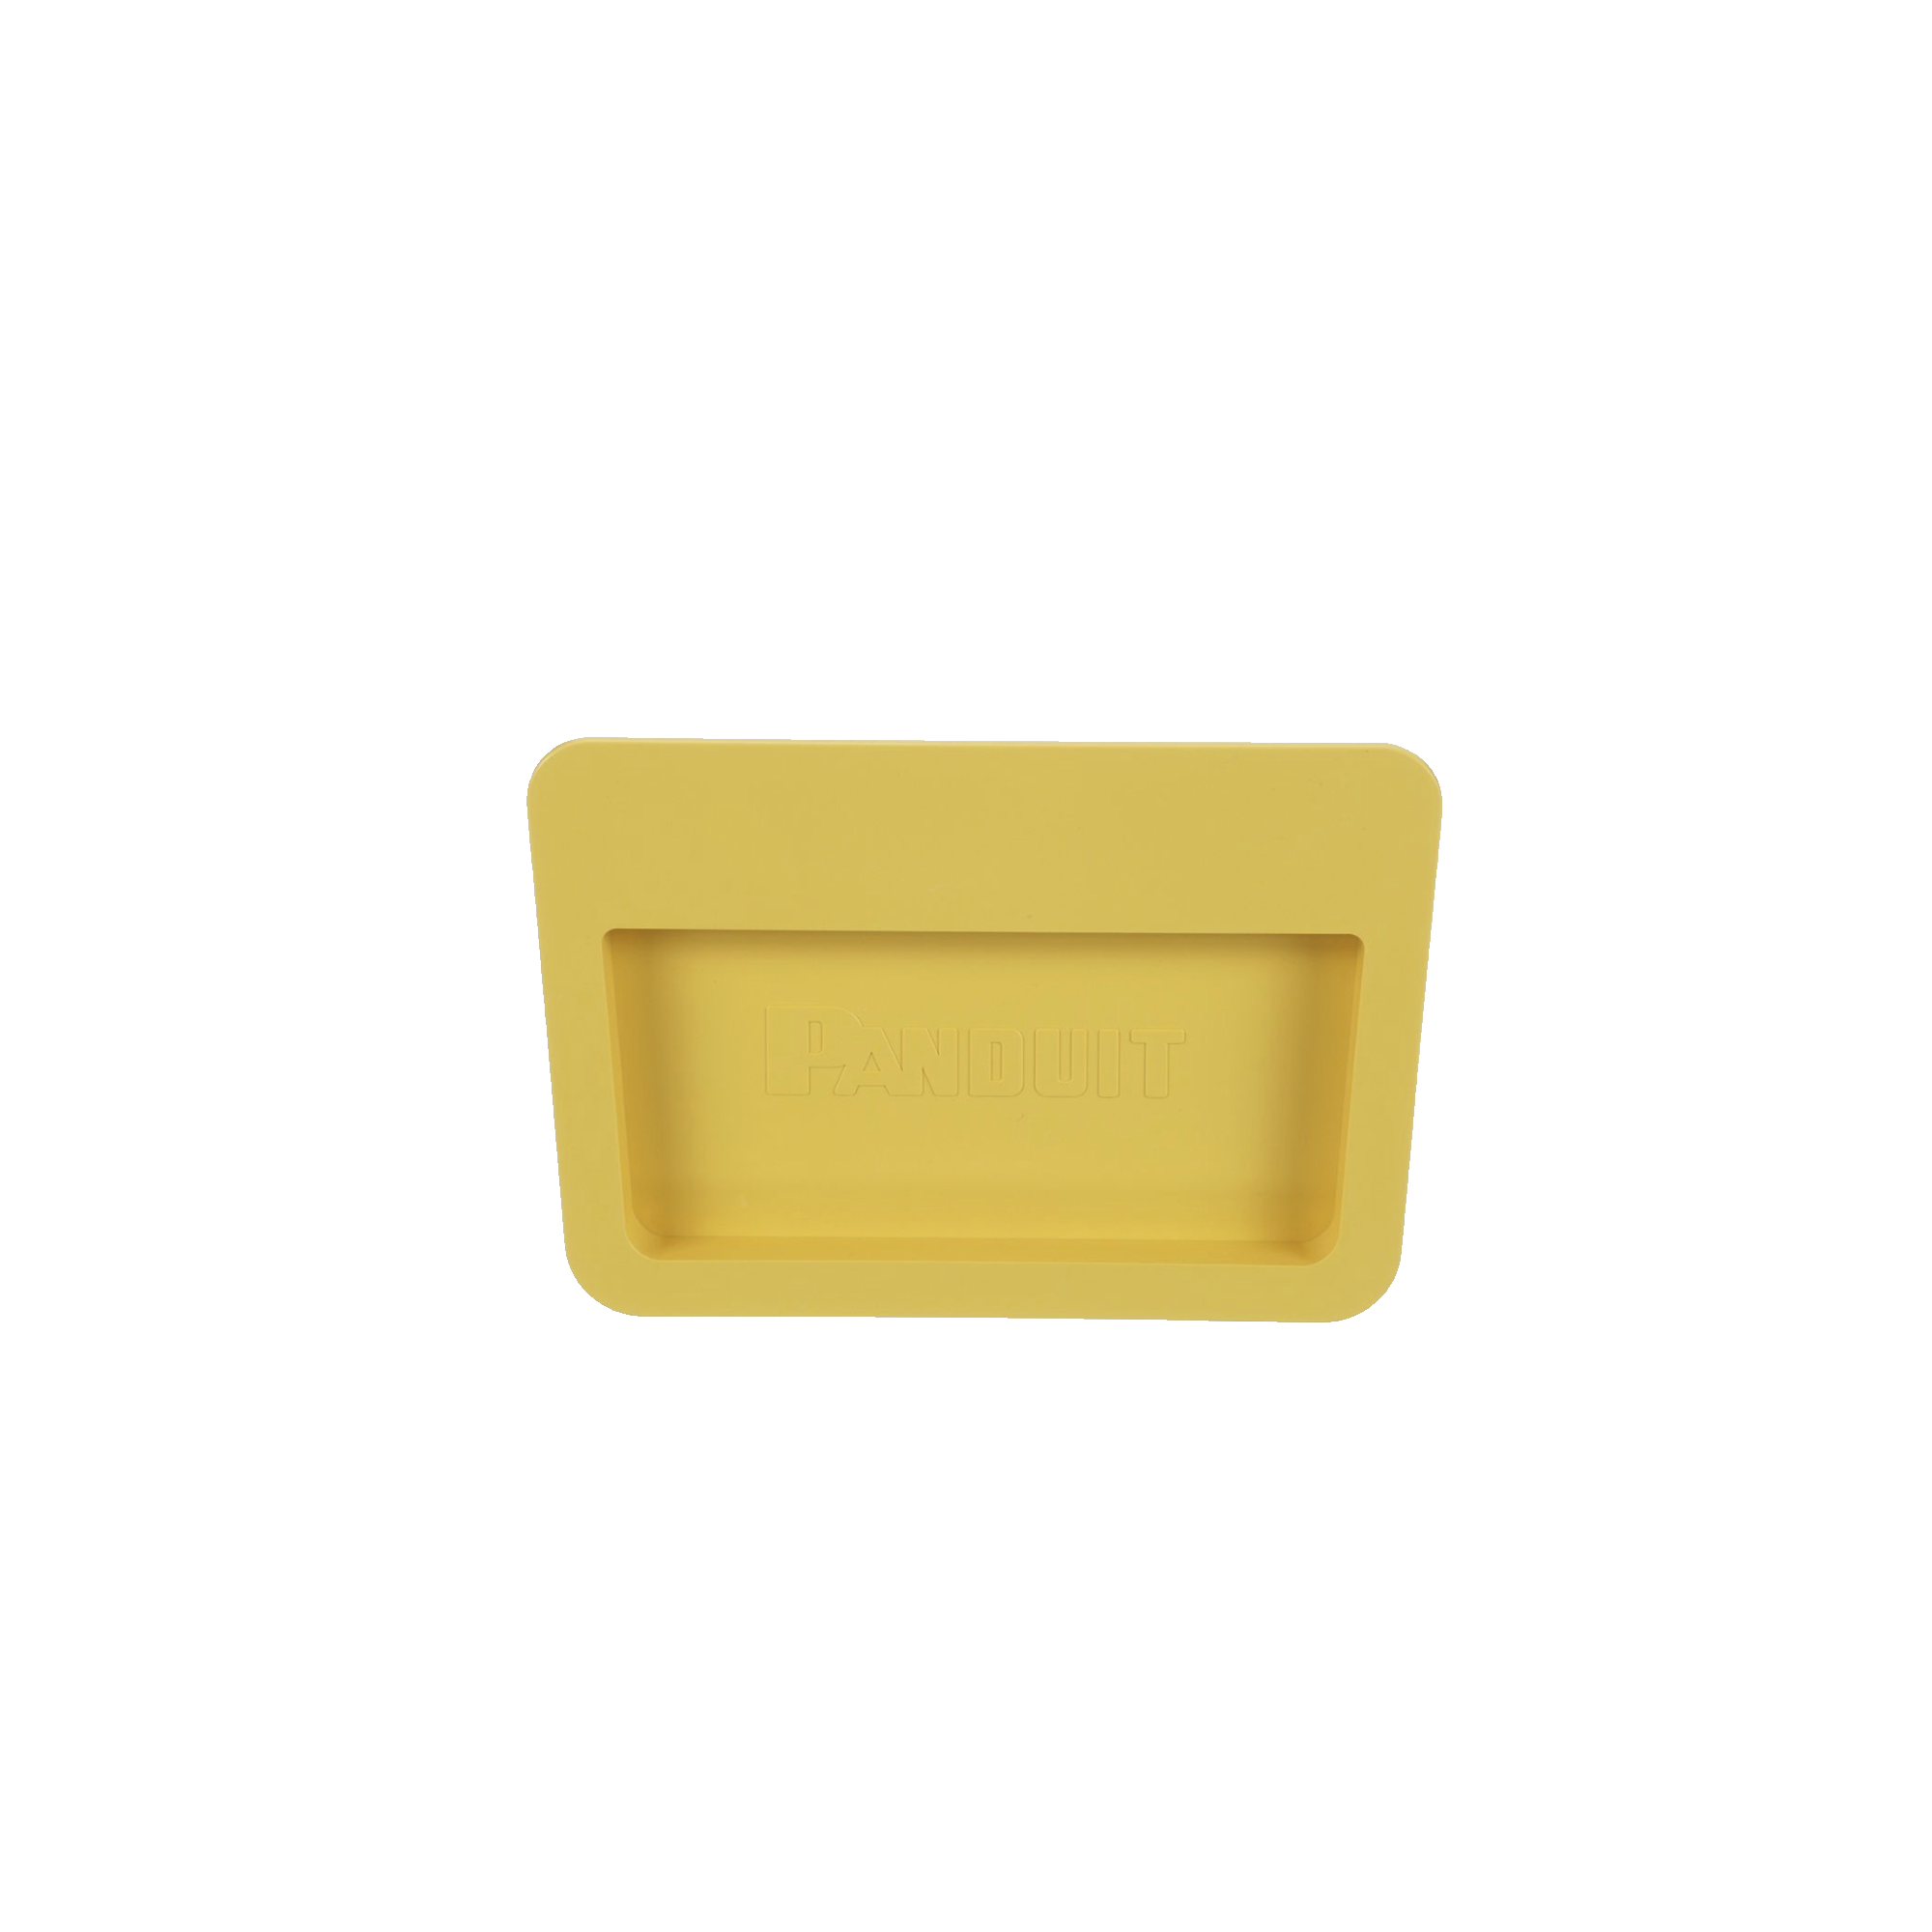 Tapa Final Para Canaletas FiberRunner™ 6x4, de Instalación a Presión, Color Amarillo